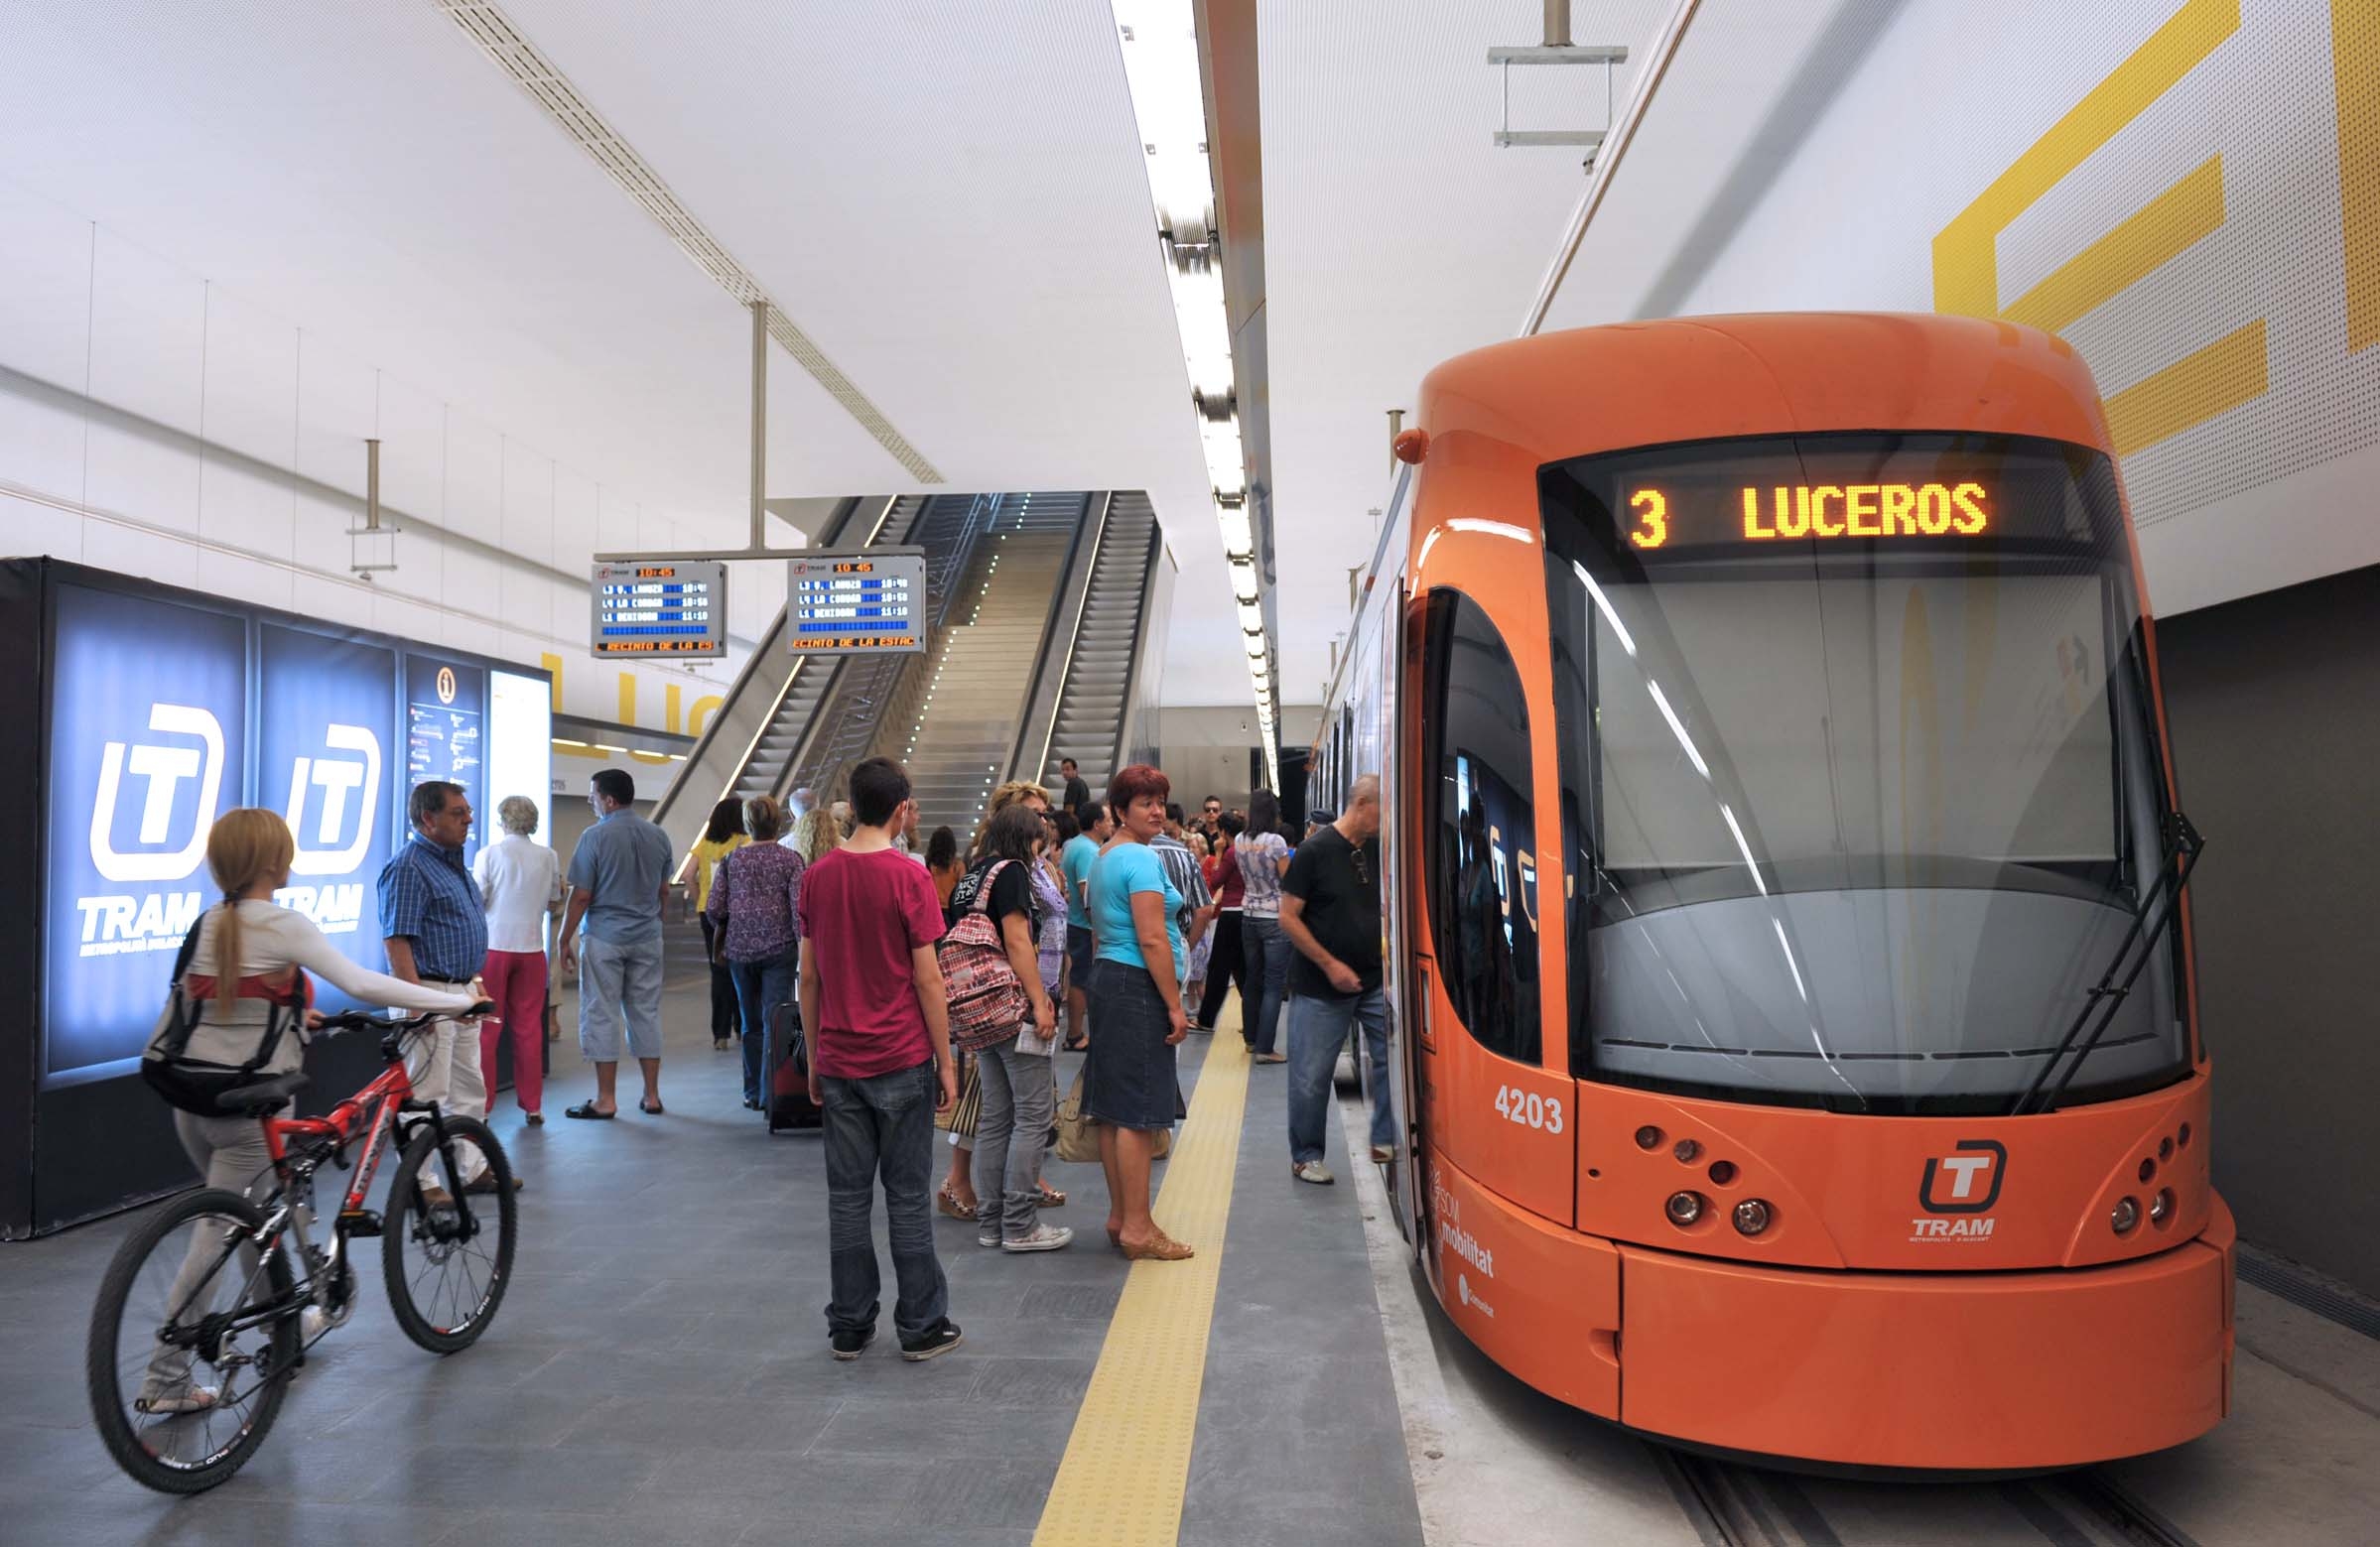 Tram Luceros